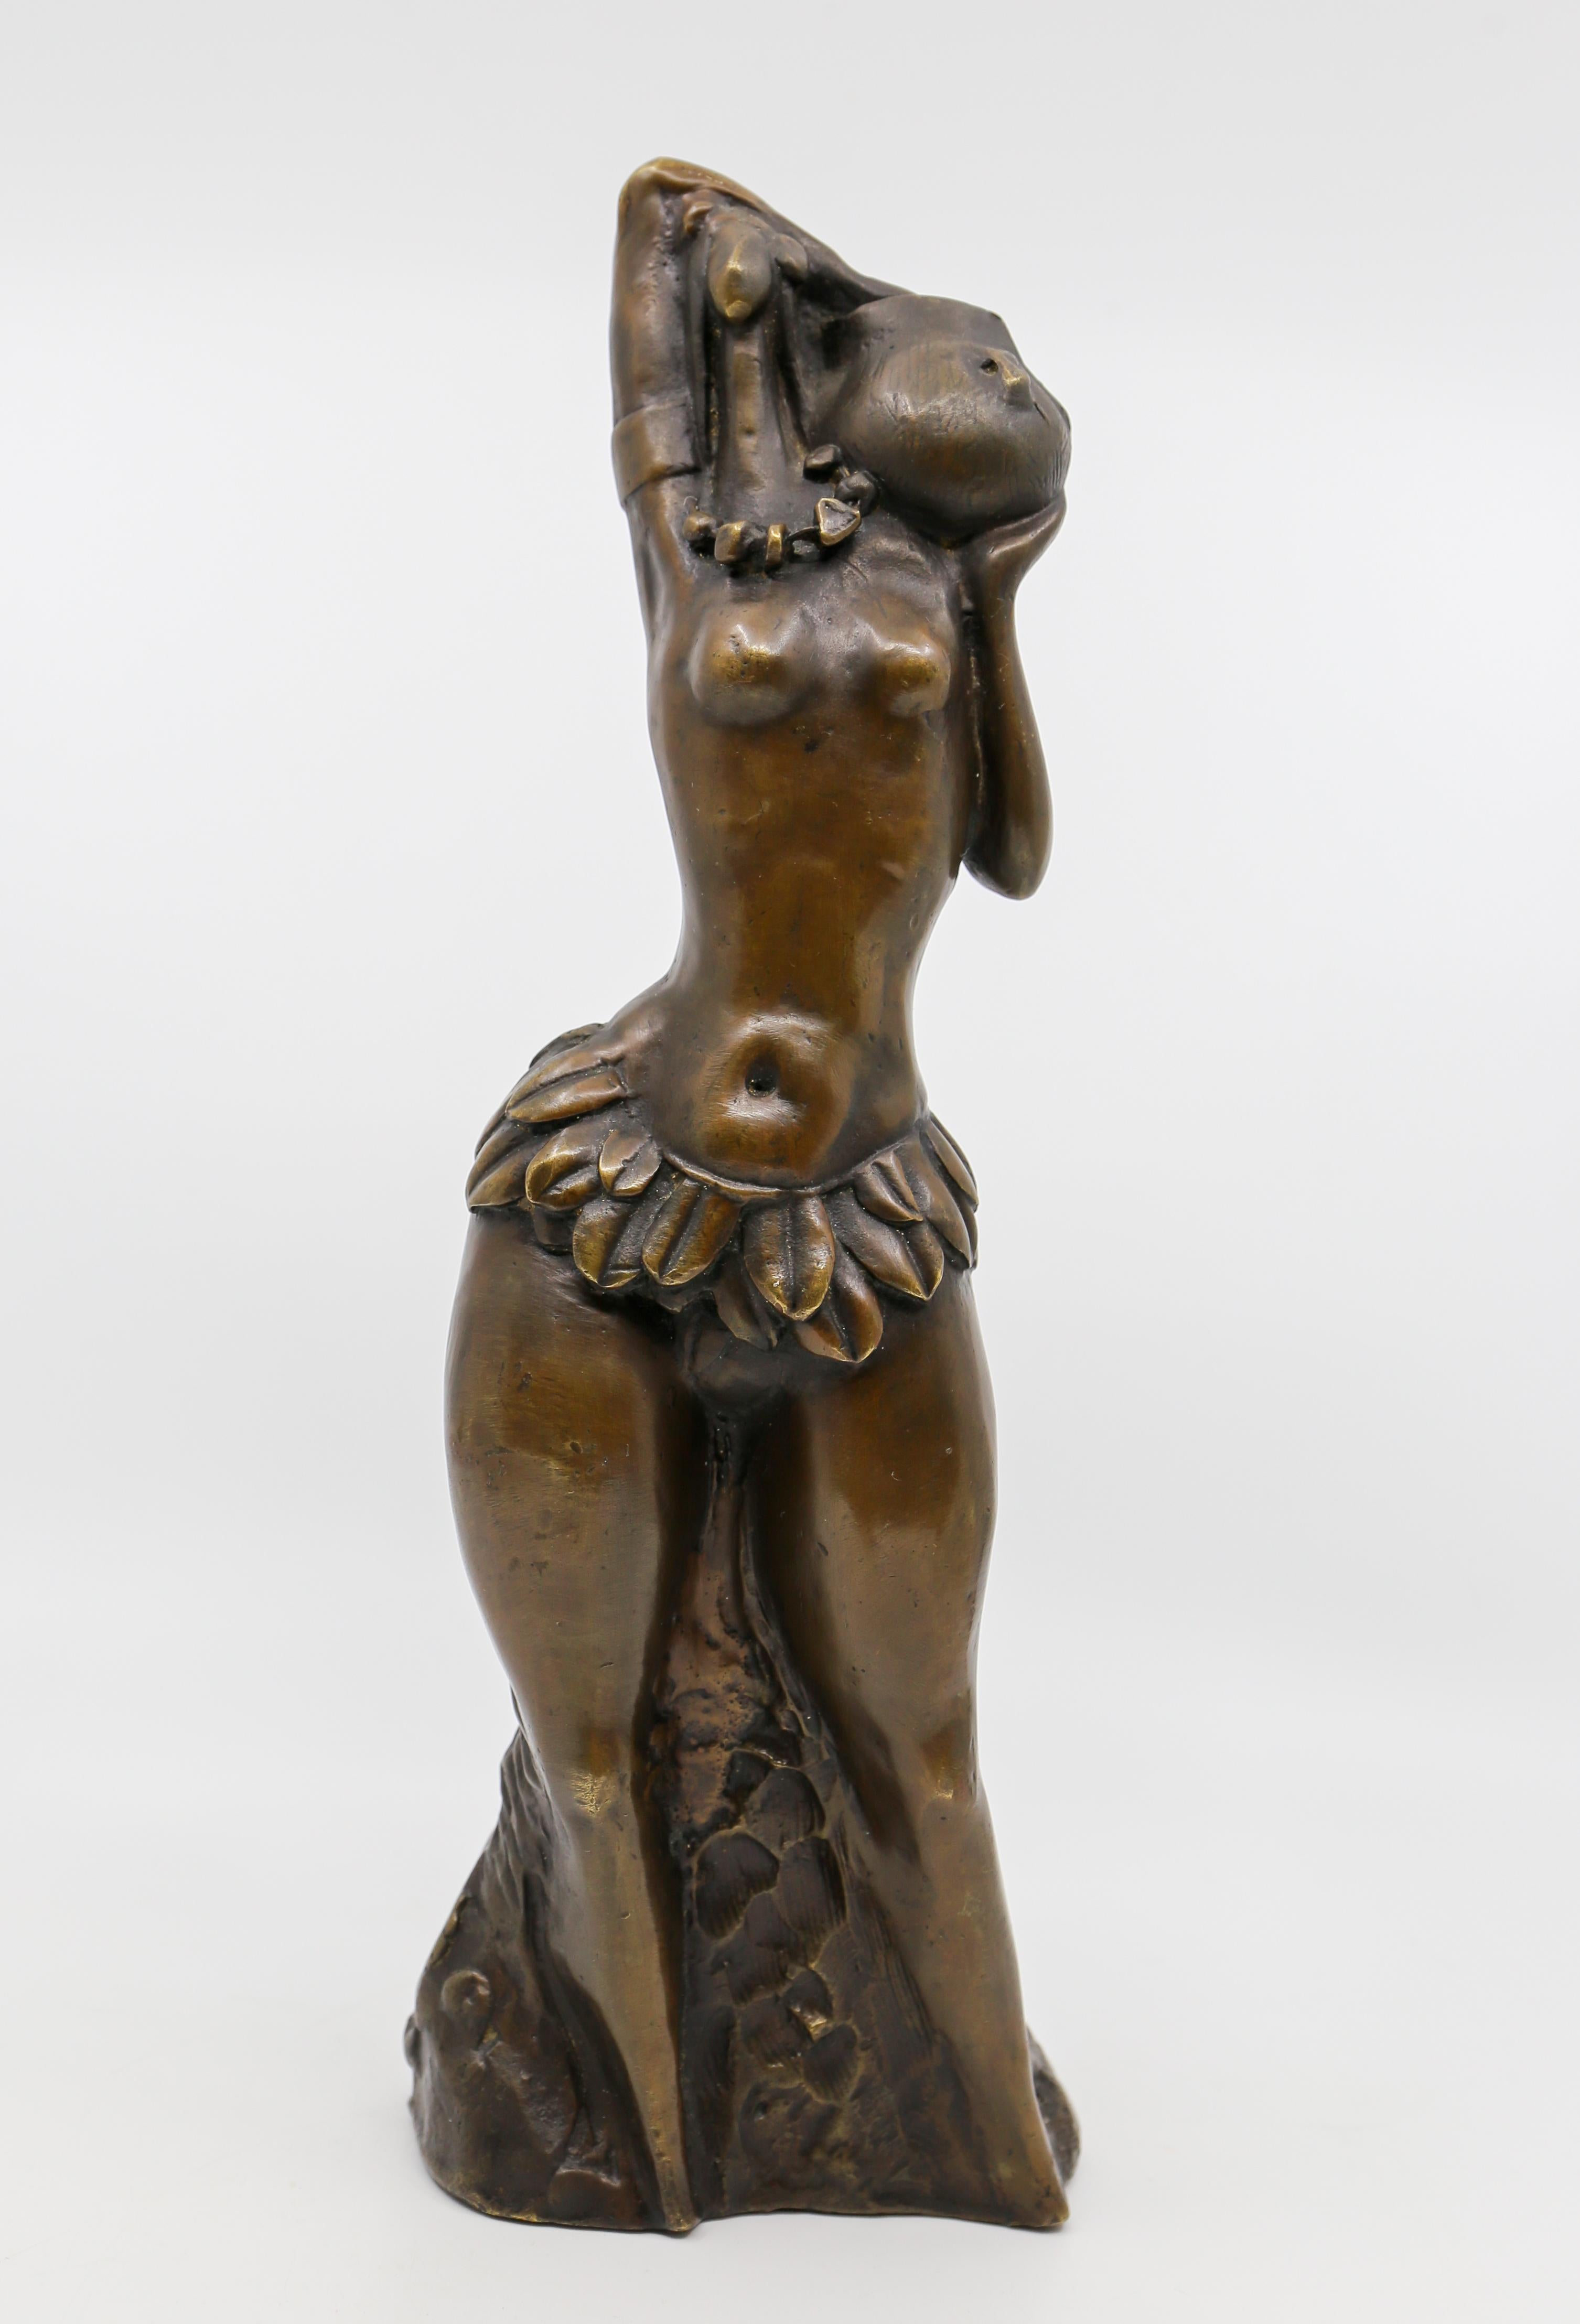 Äthiopische Hamar-Stammesfrau-Skulptur in Bronze eines stehenden weiblichen Aktes in klassischer figurativer Tradition. 

Höhe 28 cm.